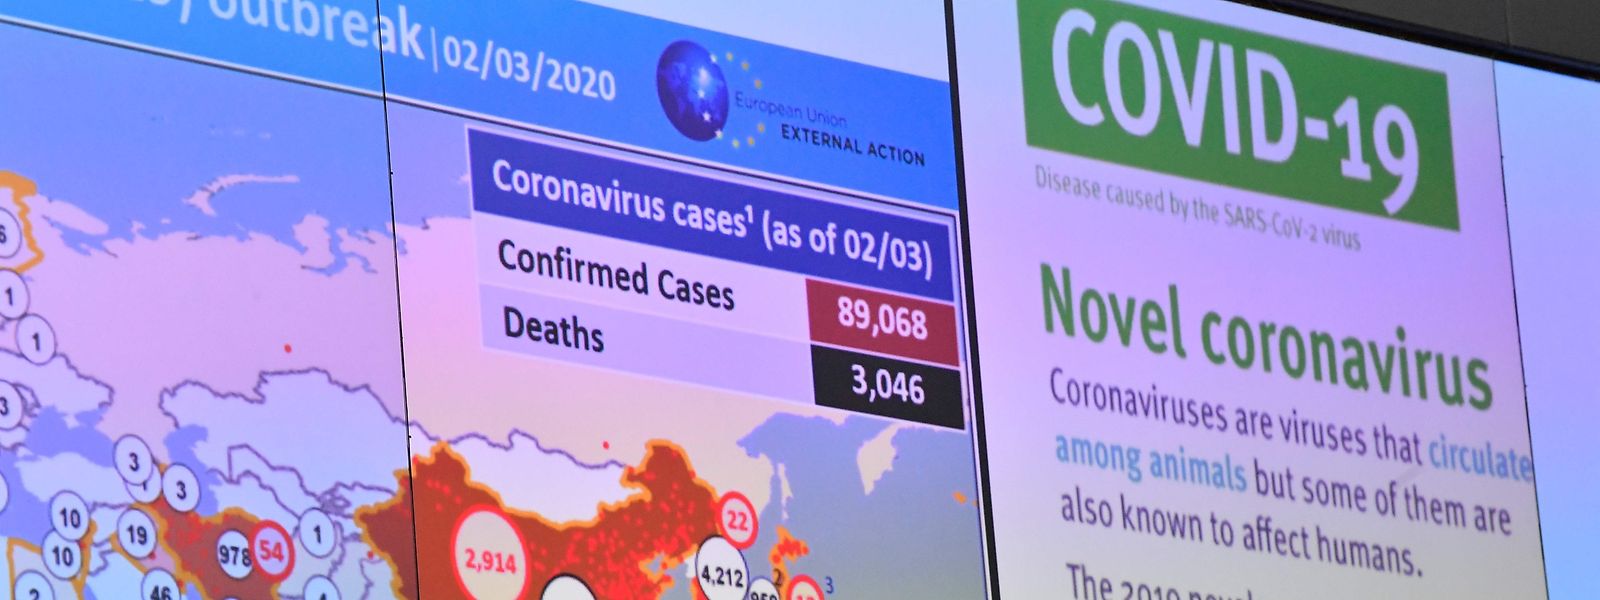 Un médecin belge sème le trouble en publiant des théories alarmistes sur la propagation du coronavirus.